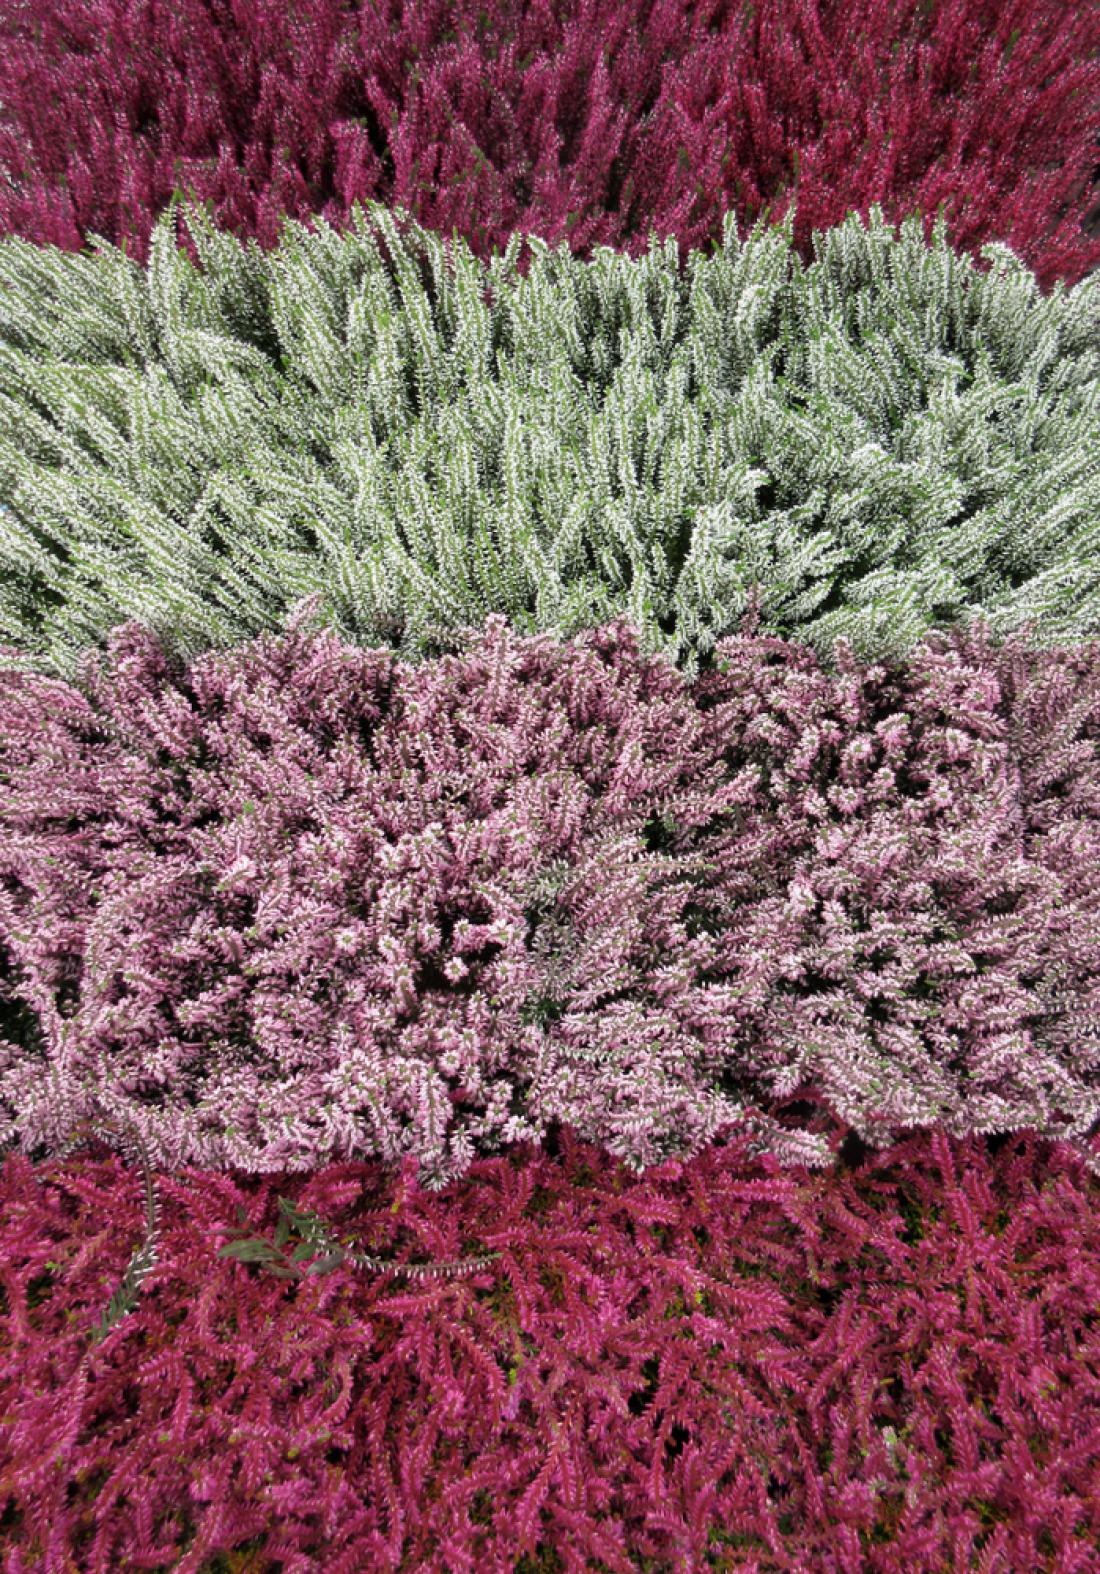 Jesenska vresa (Calluna vulgaris) je na voljo v različnih barvah. Foto: anela.k/Shutterstock